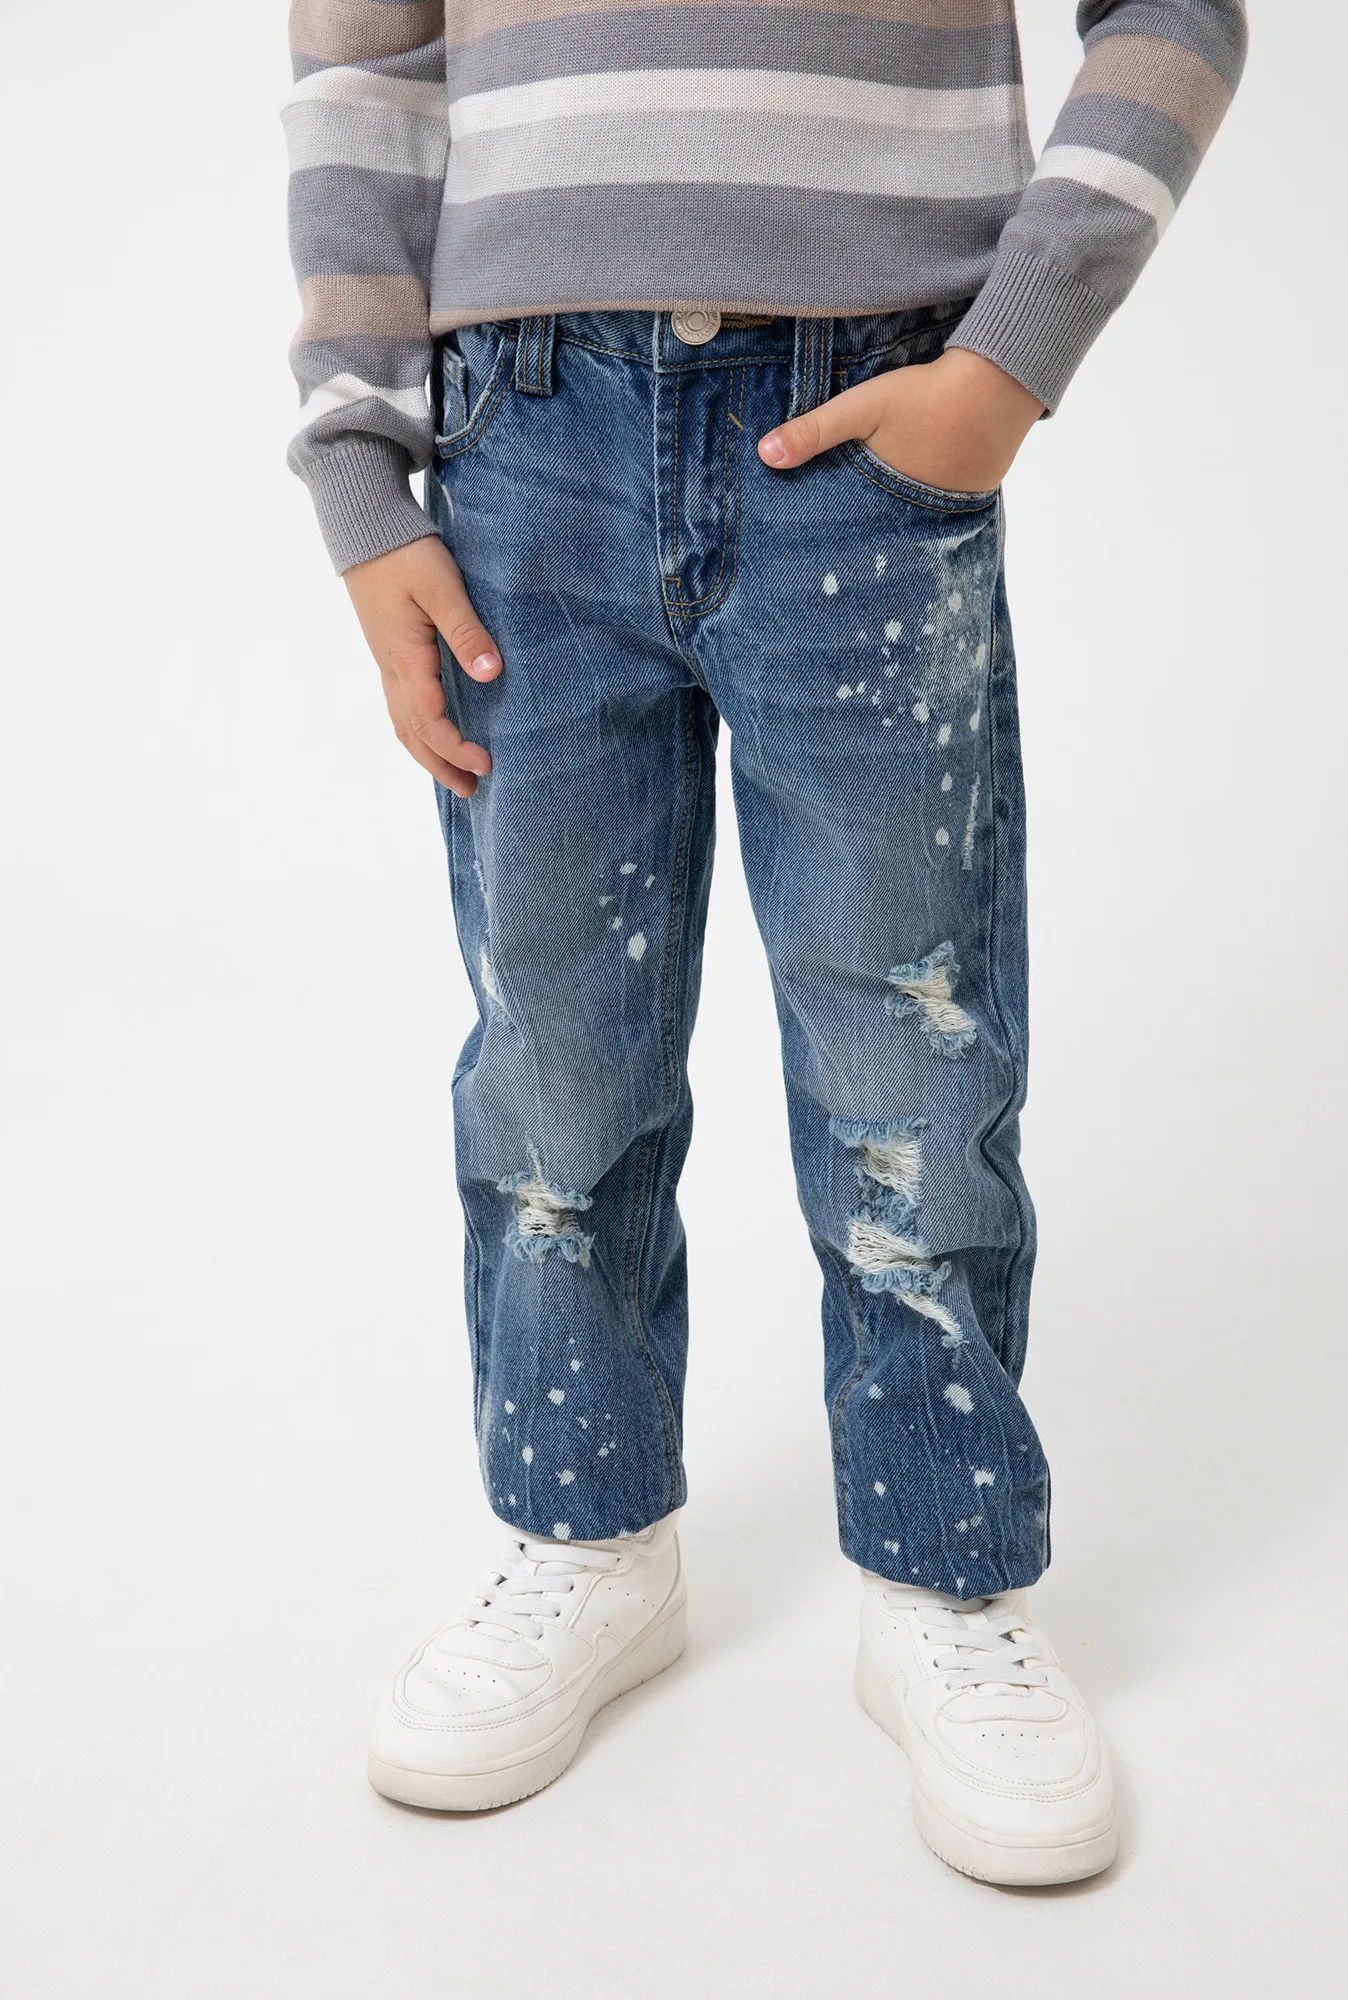 Джинсовые брюки для мальчиков Acoola | Детская одежда и обувь